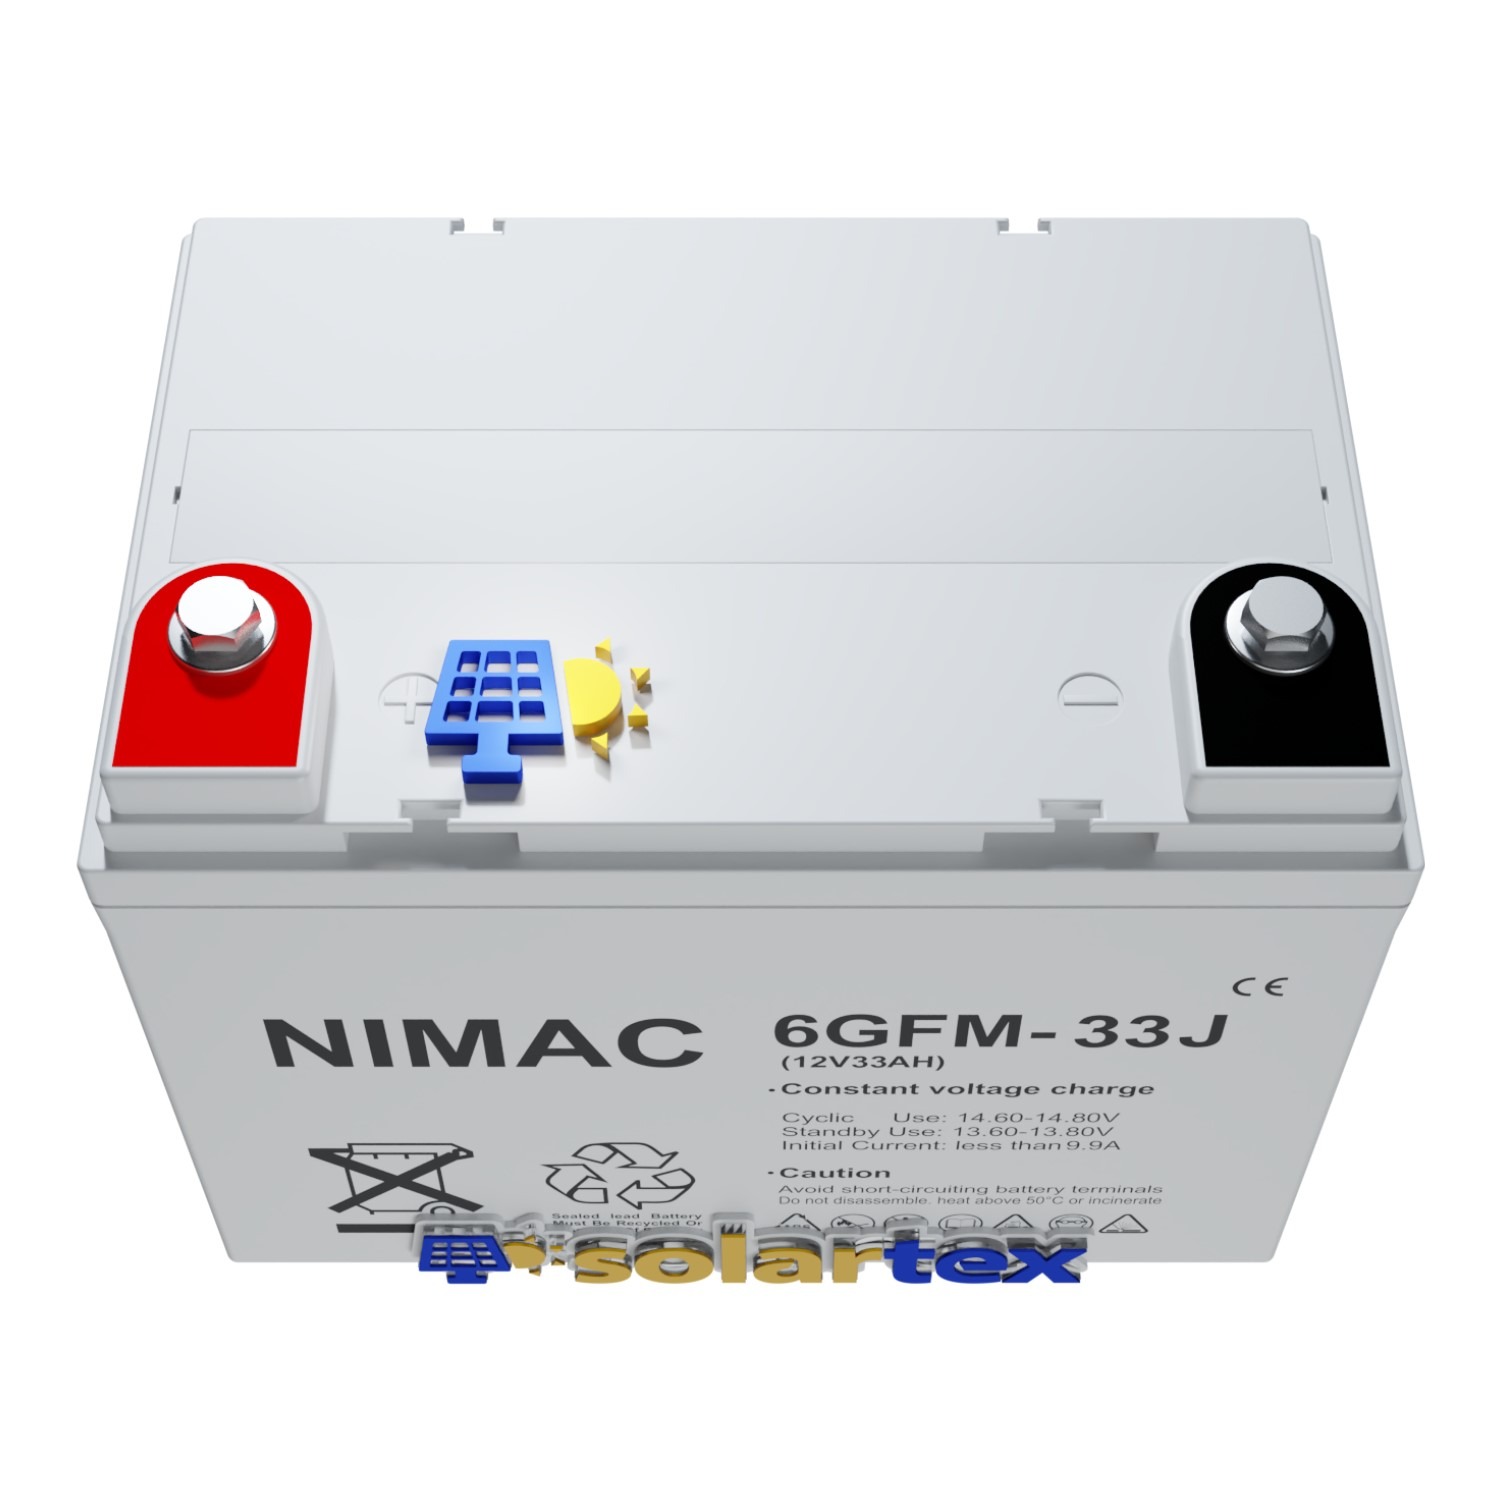 Batería de GEL 33Ah 12V Nimac - Solartex Chile